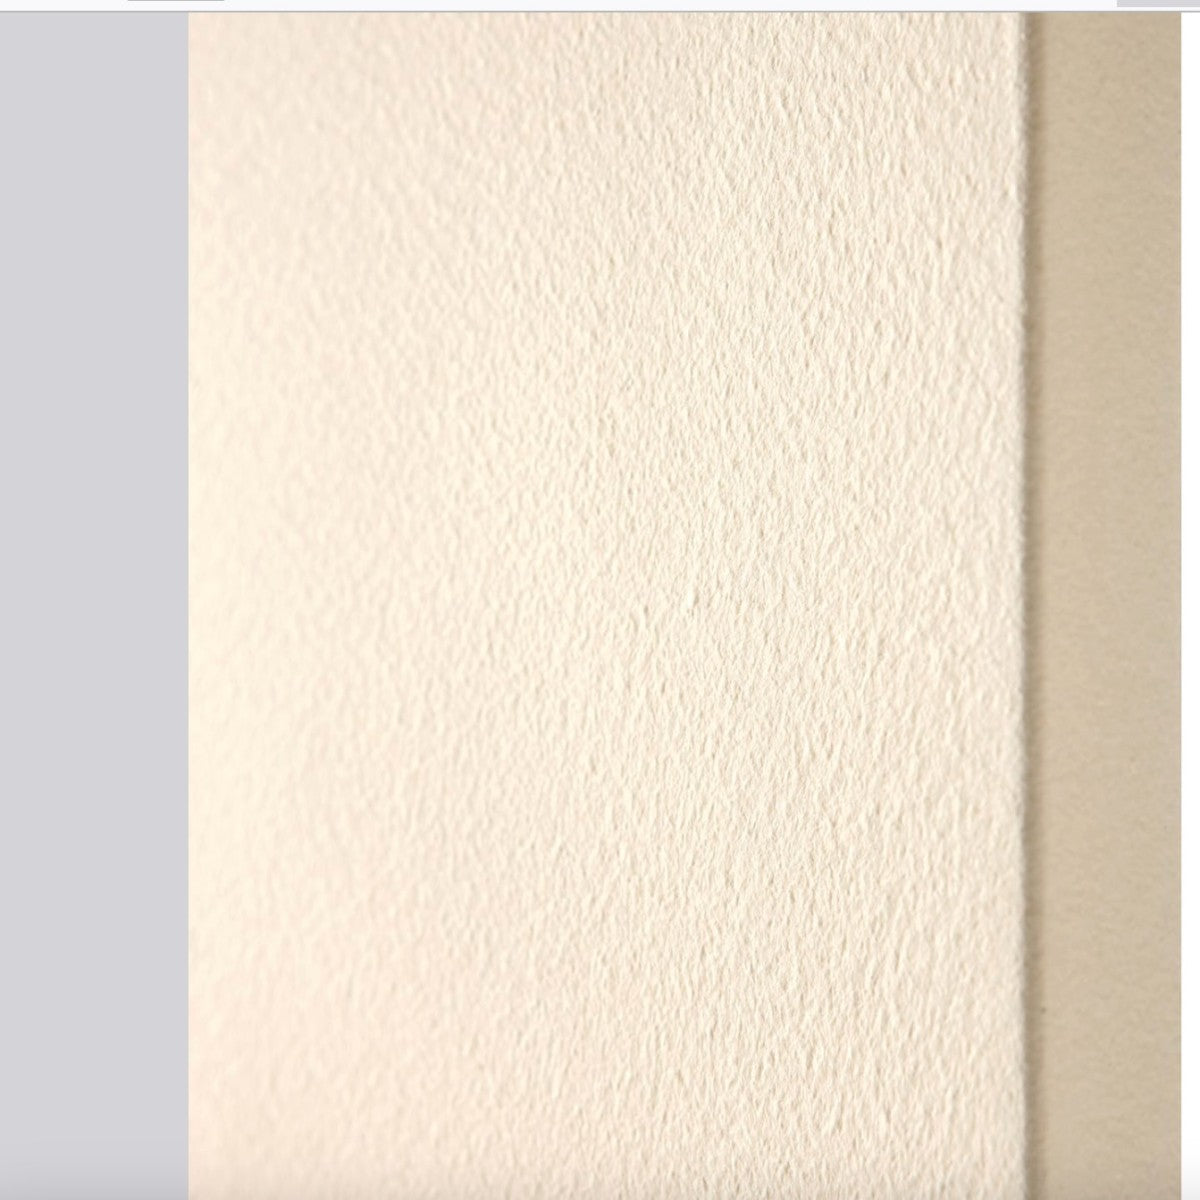 Termoarredo idraulico in marmo bianco o colorato perfetto, dimensioni 30x180, colore bianco perla ral 1013